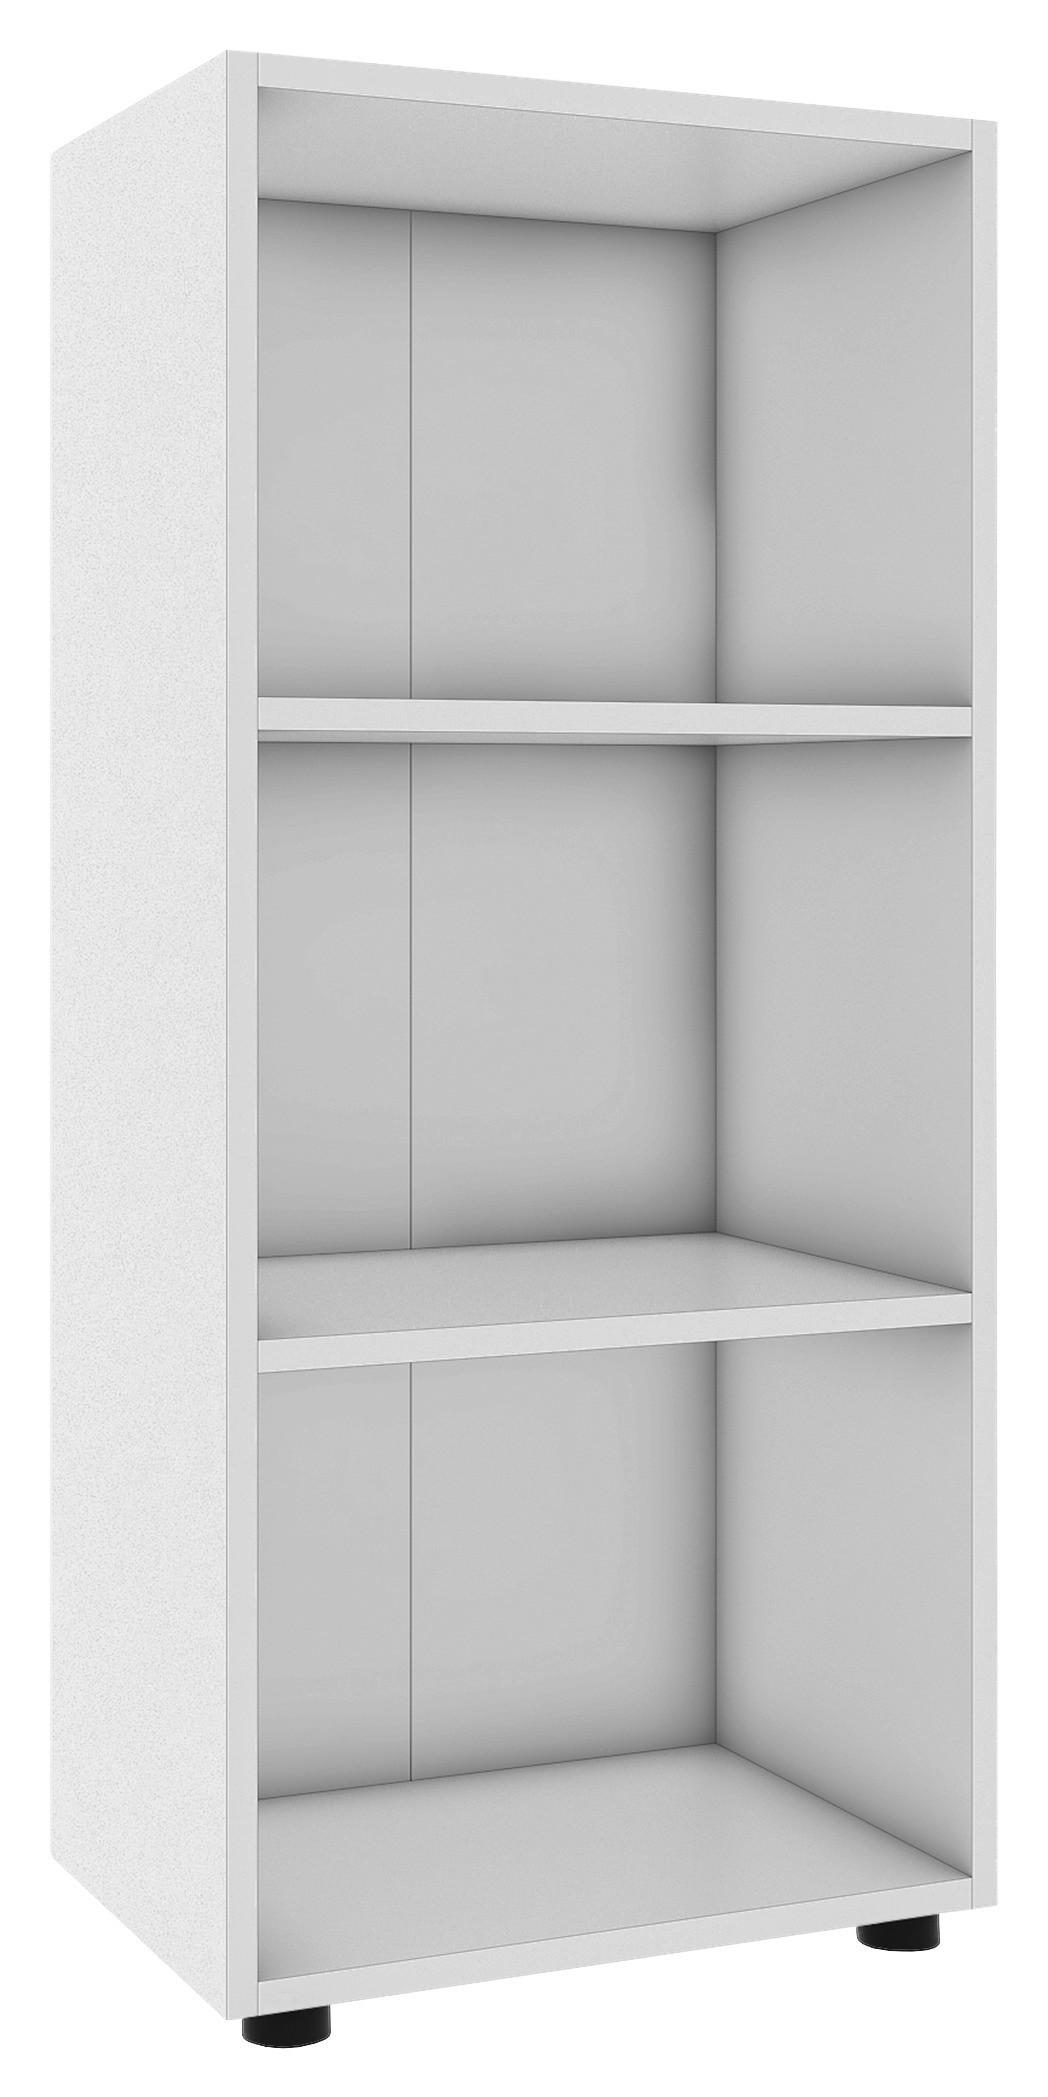 REGAL Weiß  - Schwarz/Weiß, MODERN, Holzwerkstoff/Kunststoff (49/108/32cm) - MID.YOU